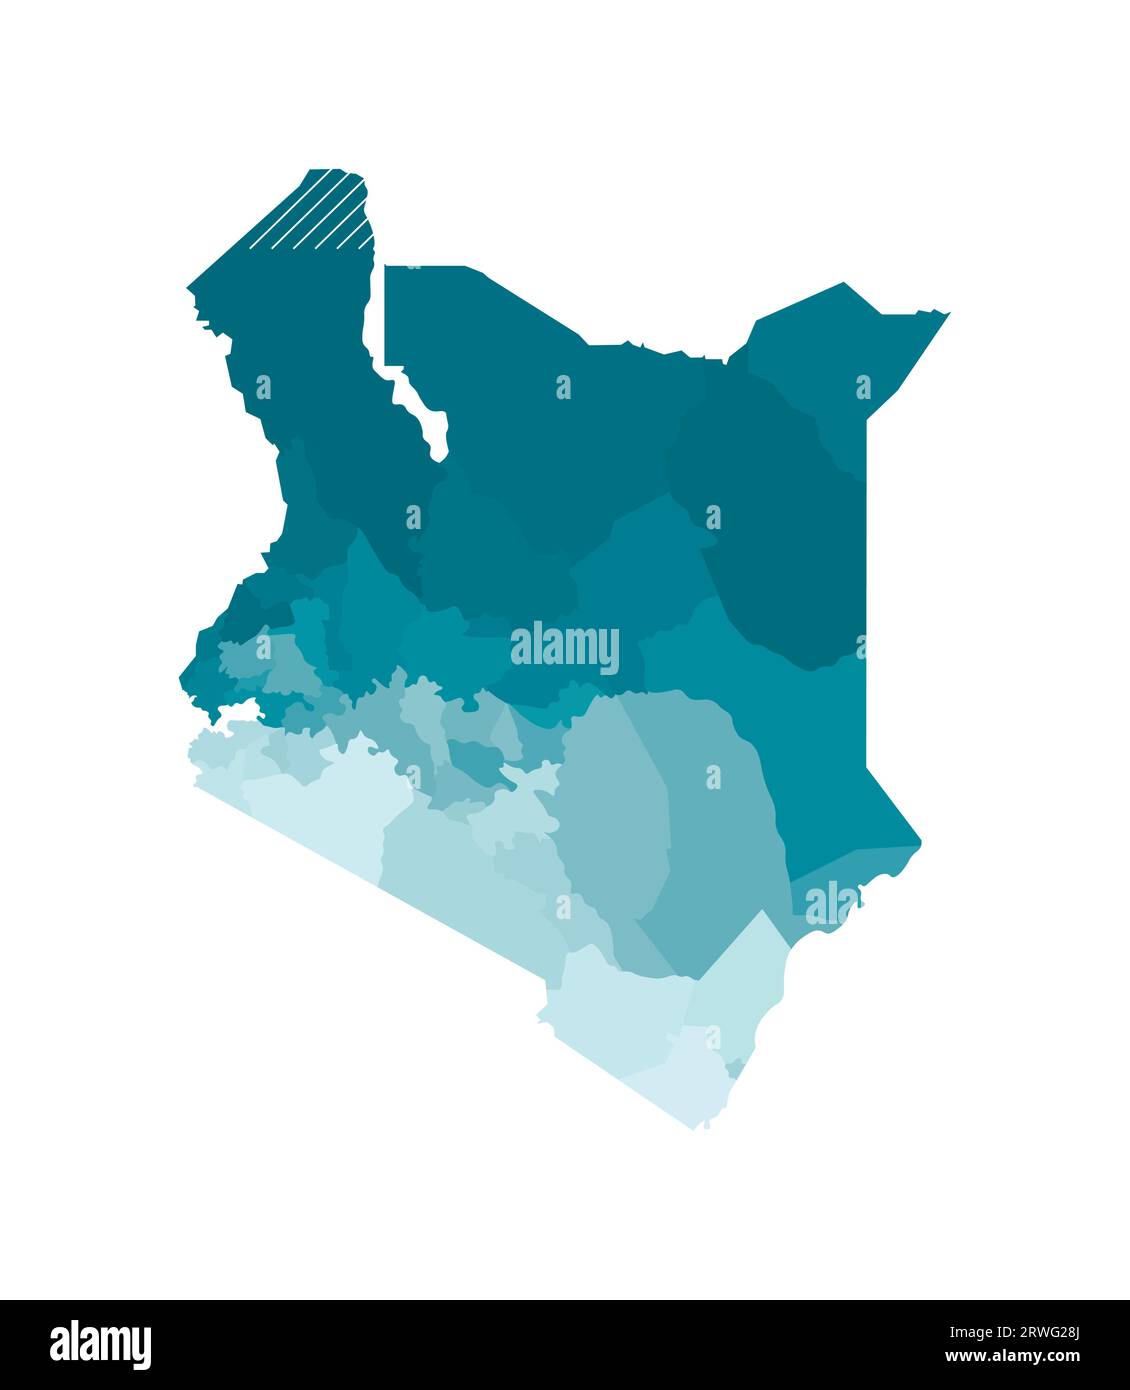 Vektorisolierte Darstellung einer vereinfachten Verwaltungskarte Kenias. Grenzen der Grafschaften (Regionen). Farbenfrohes Khaki Stock Vektor